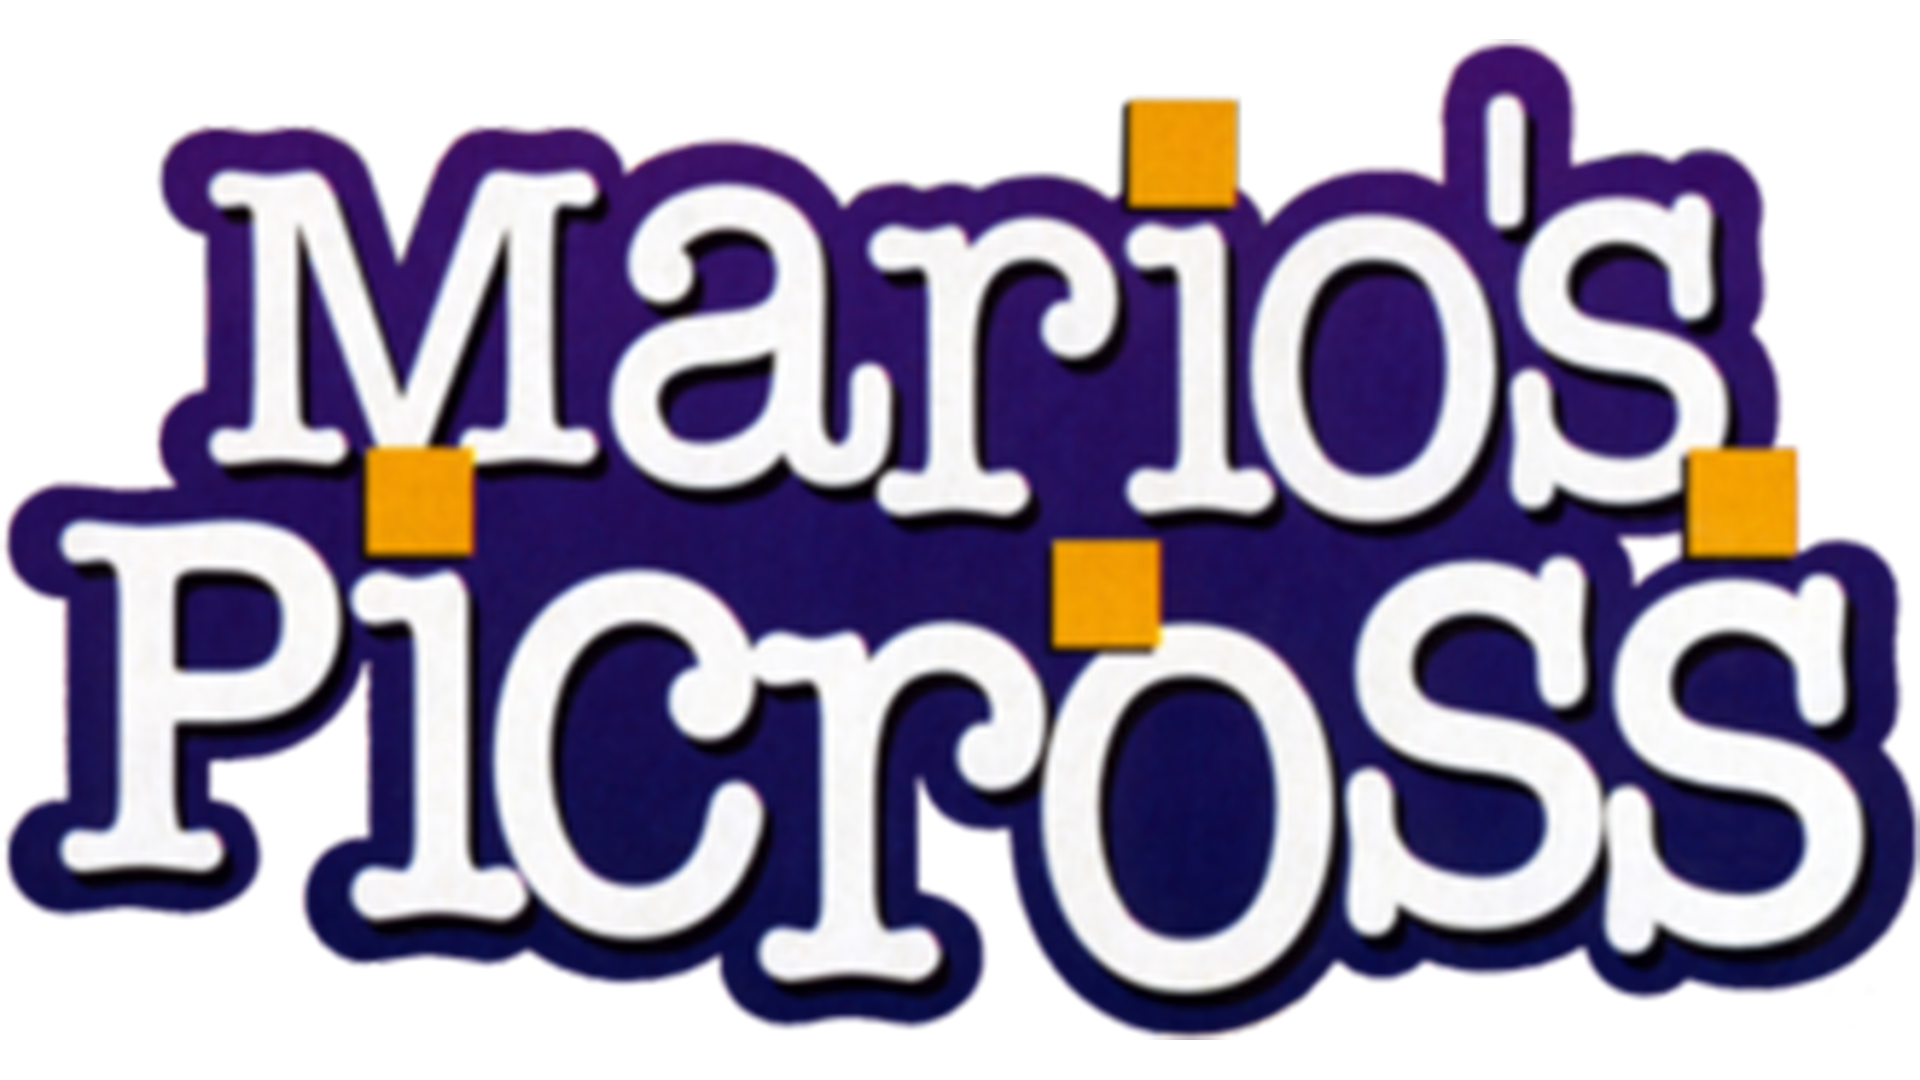 Mario's Picross Logo